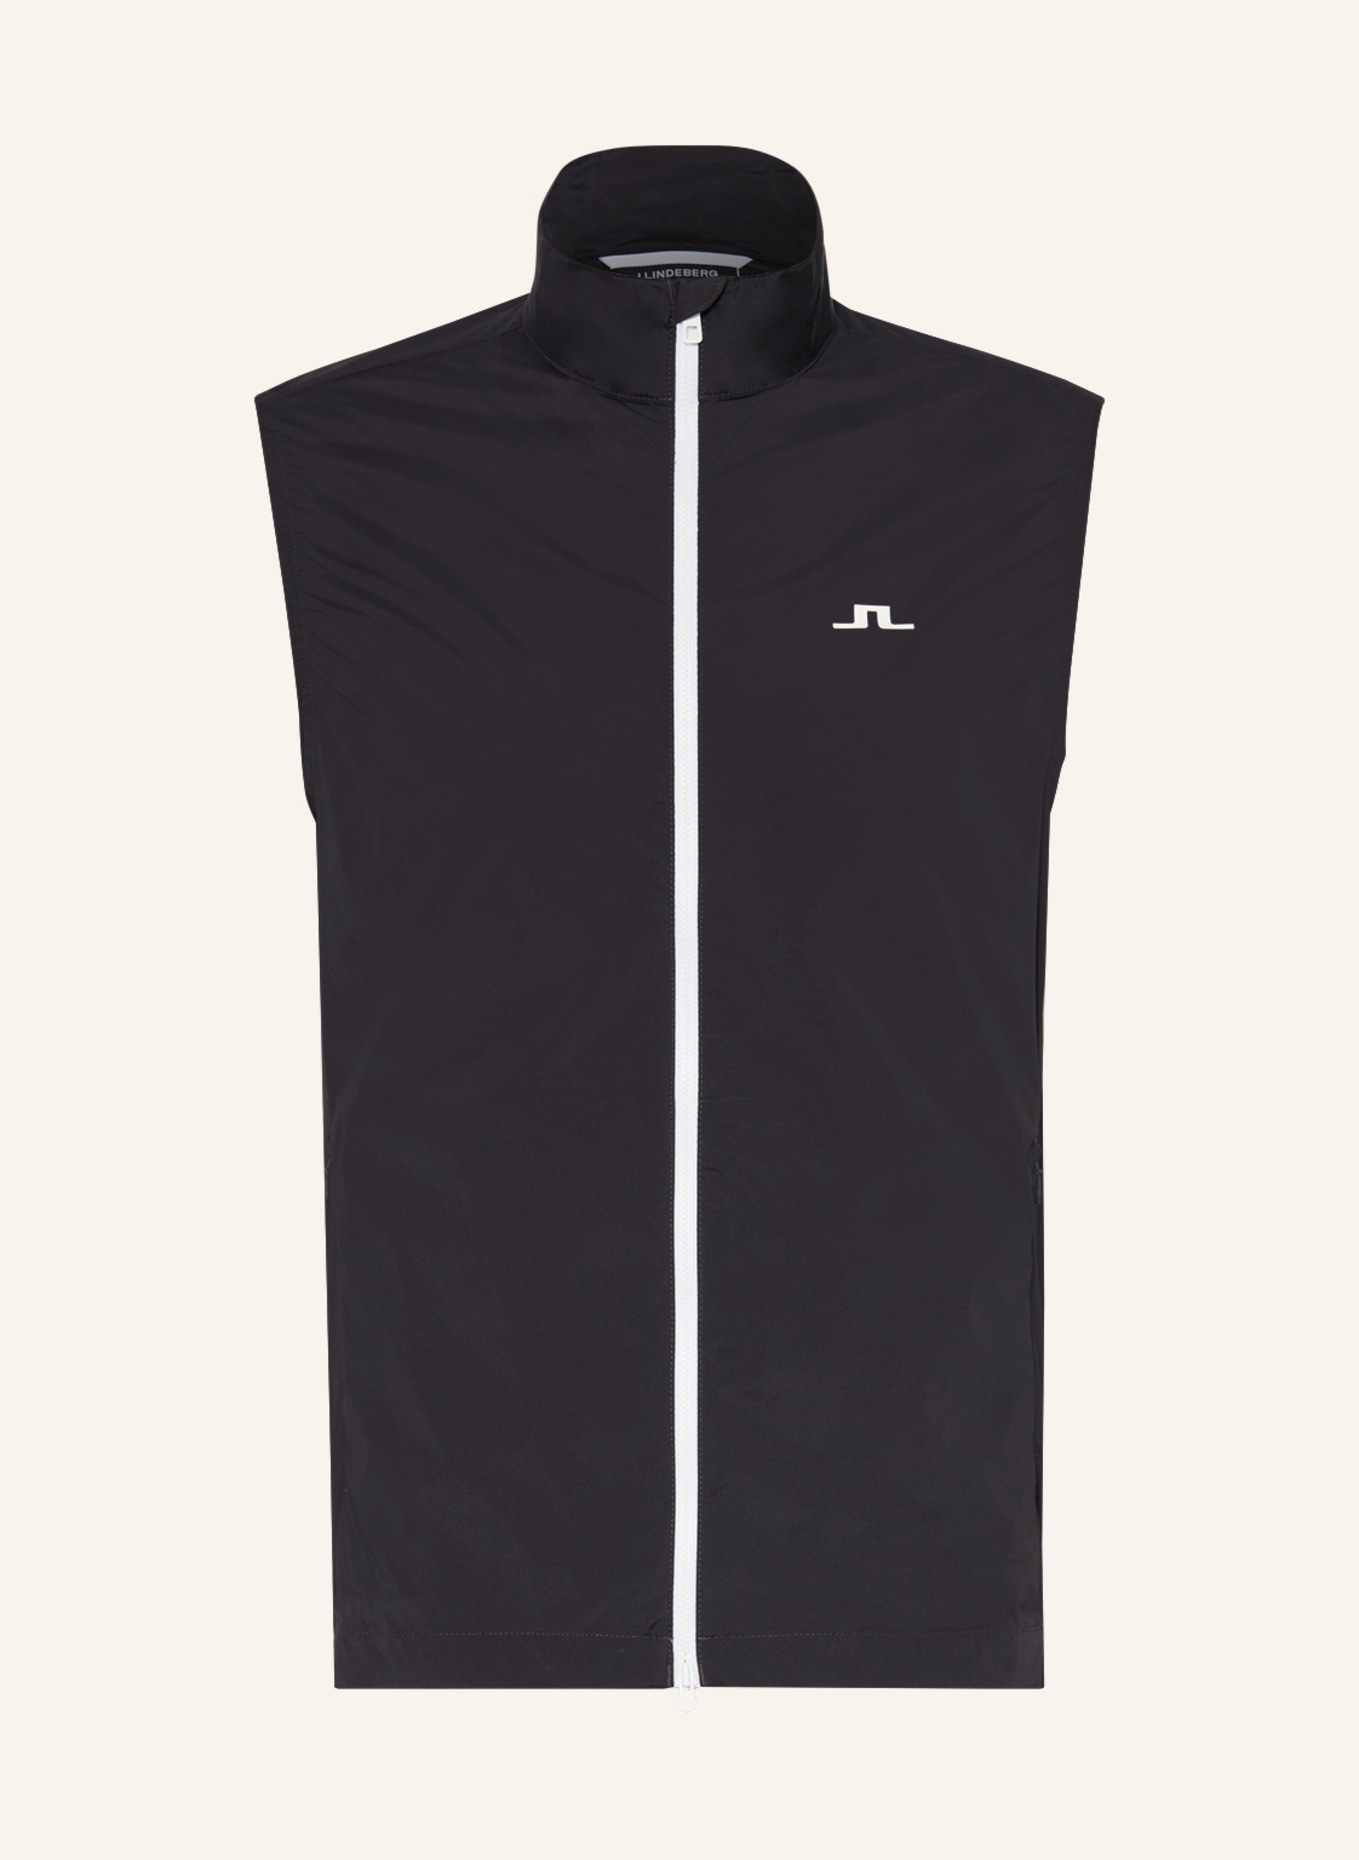 J.LINDEBERG Performance vest, Color: BLACK (Image 1)